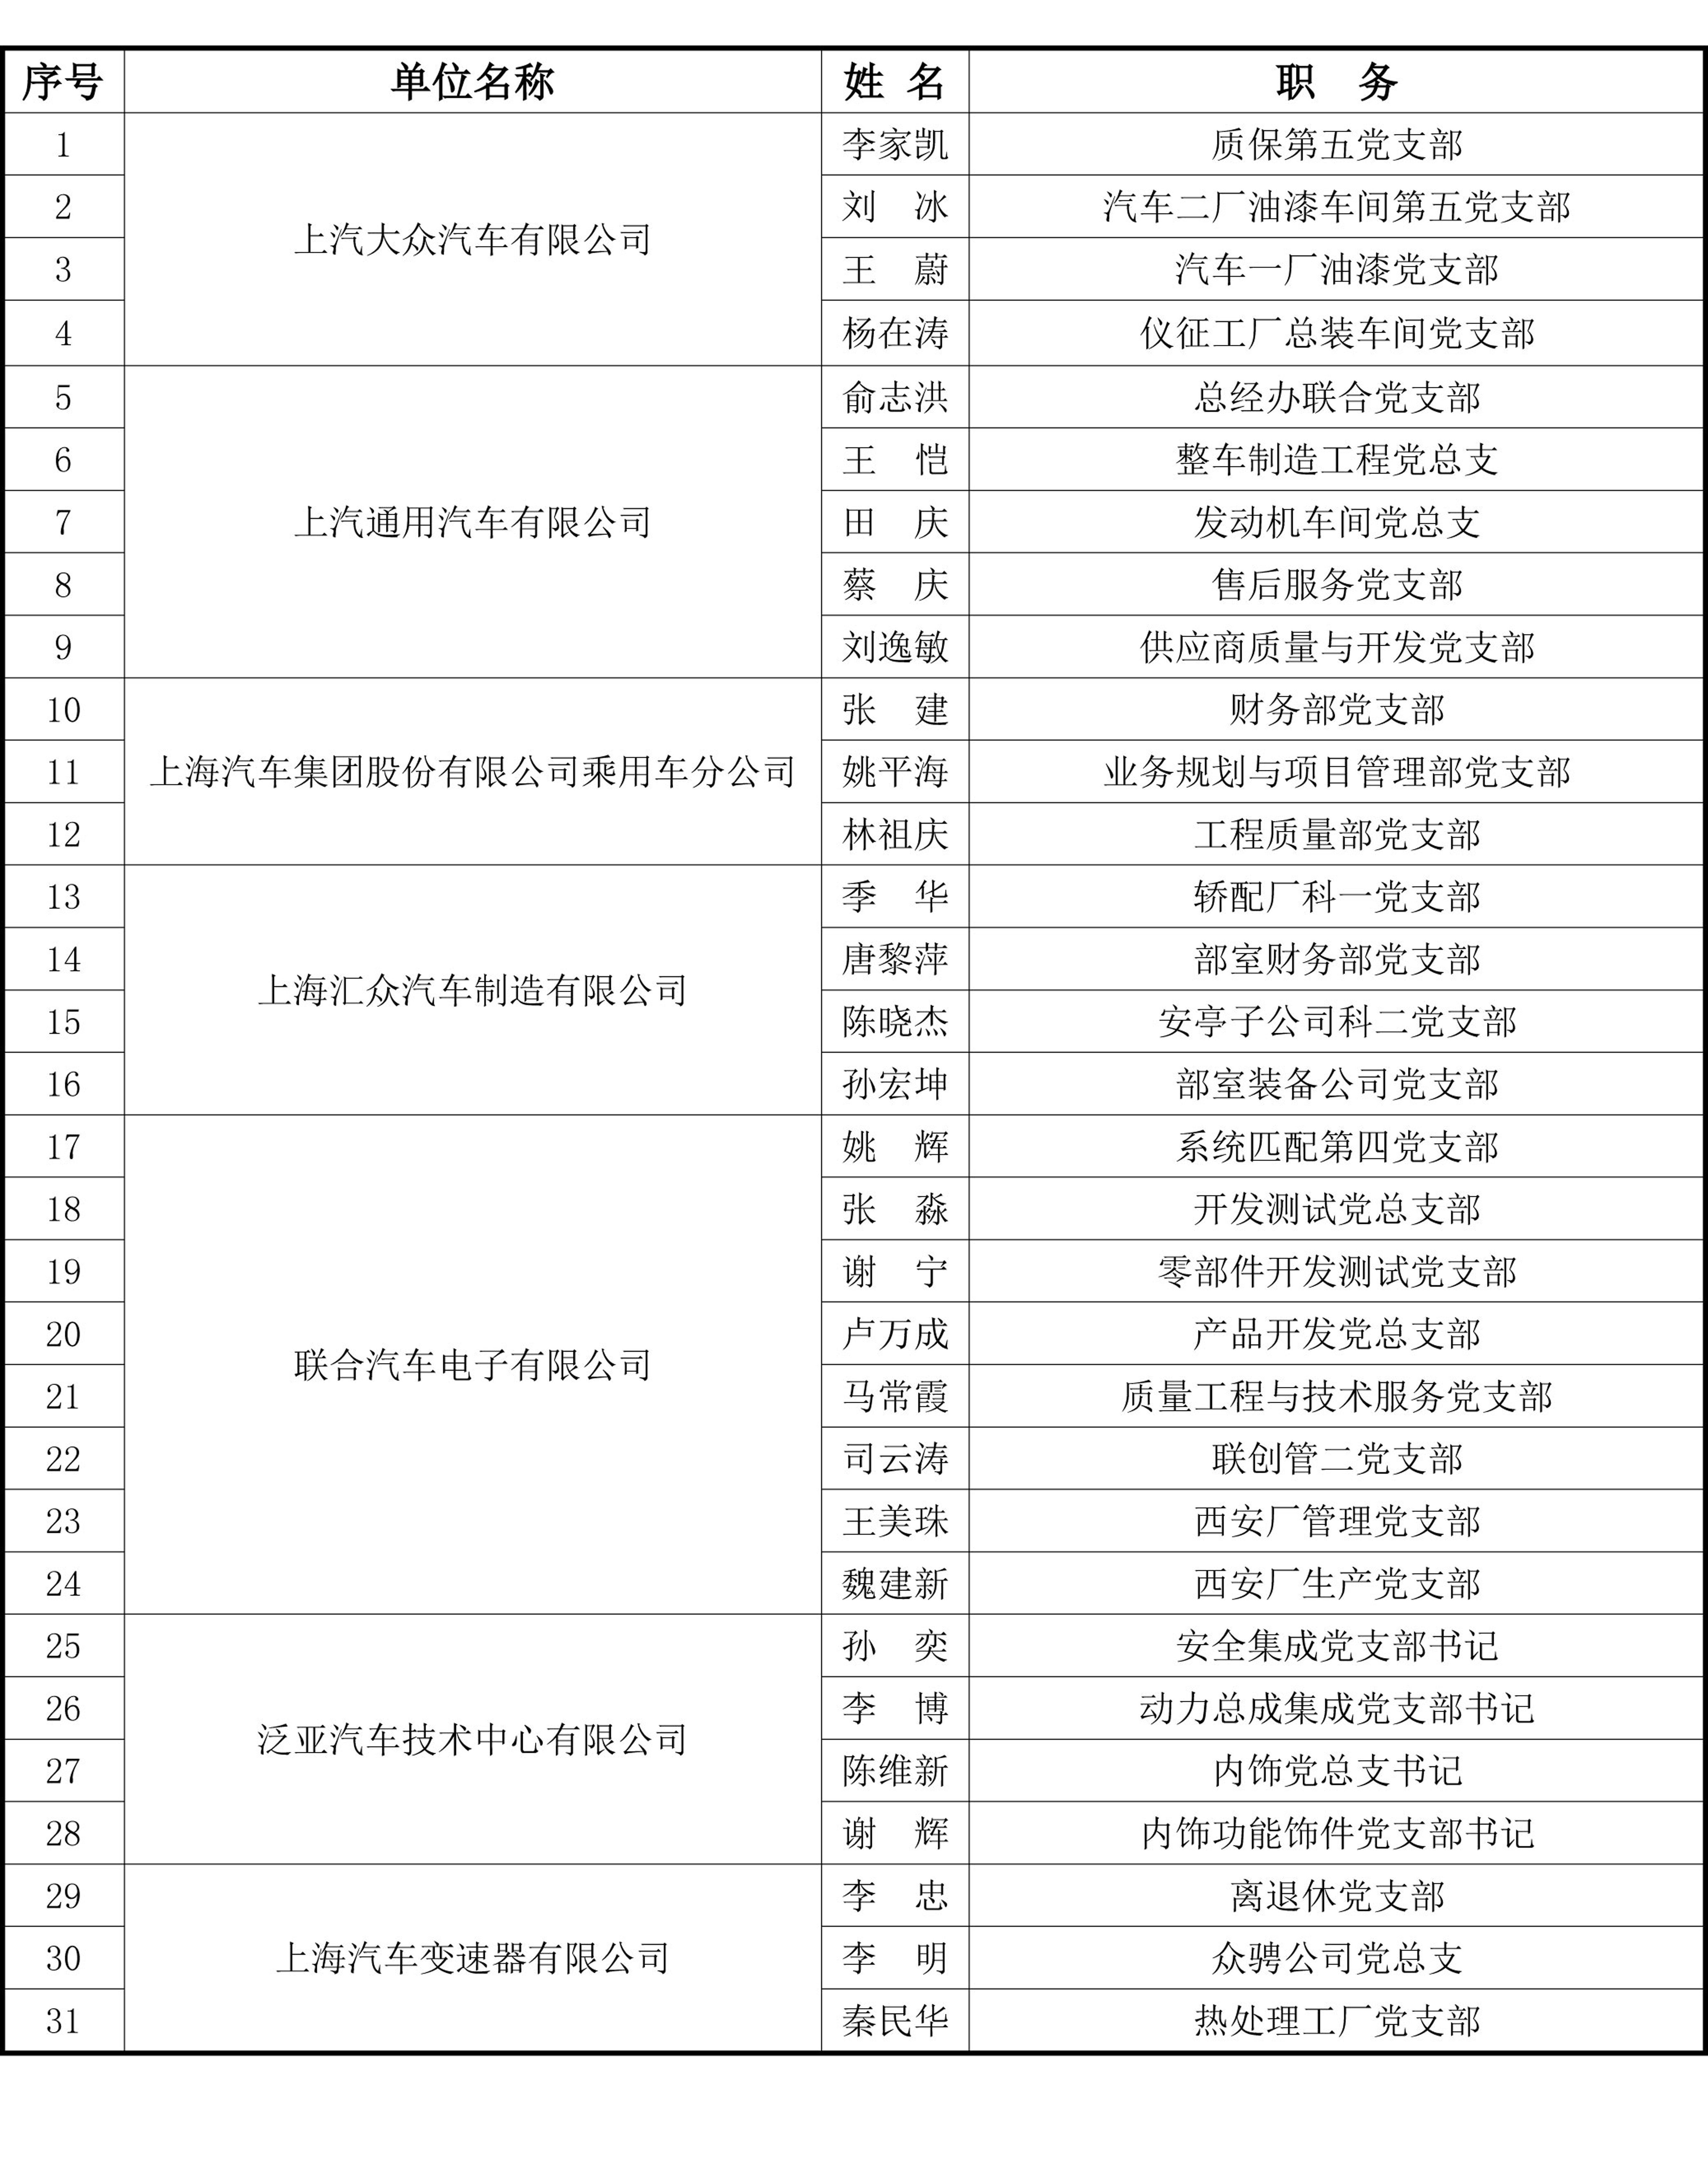 上海国有企业上汽集团基层党支部书记集中轮训